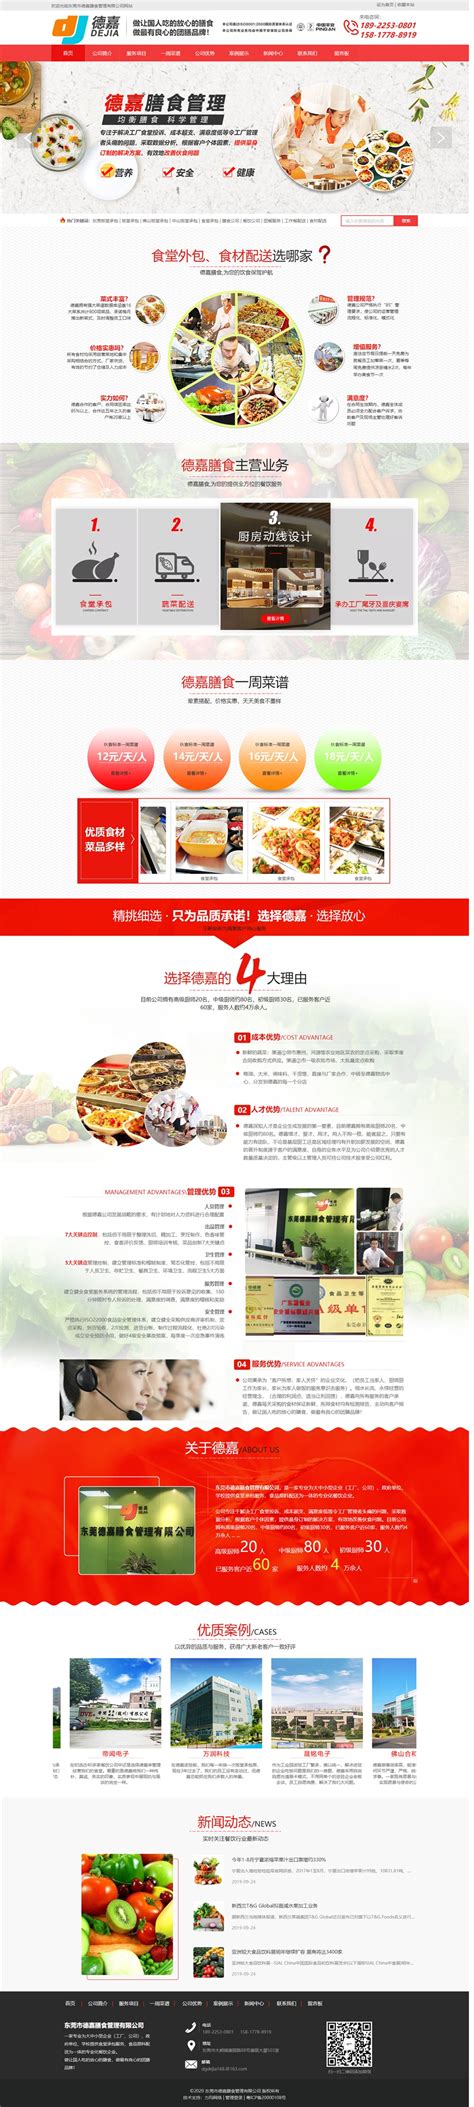 清谷新禾有机绿色食品营销型网站案例展示